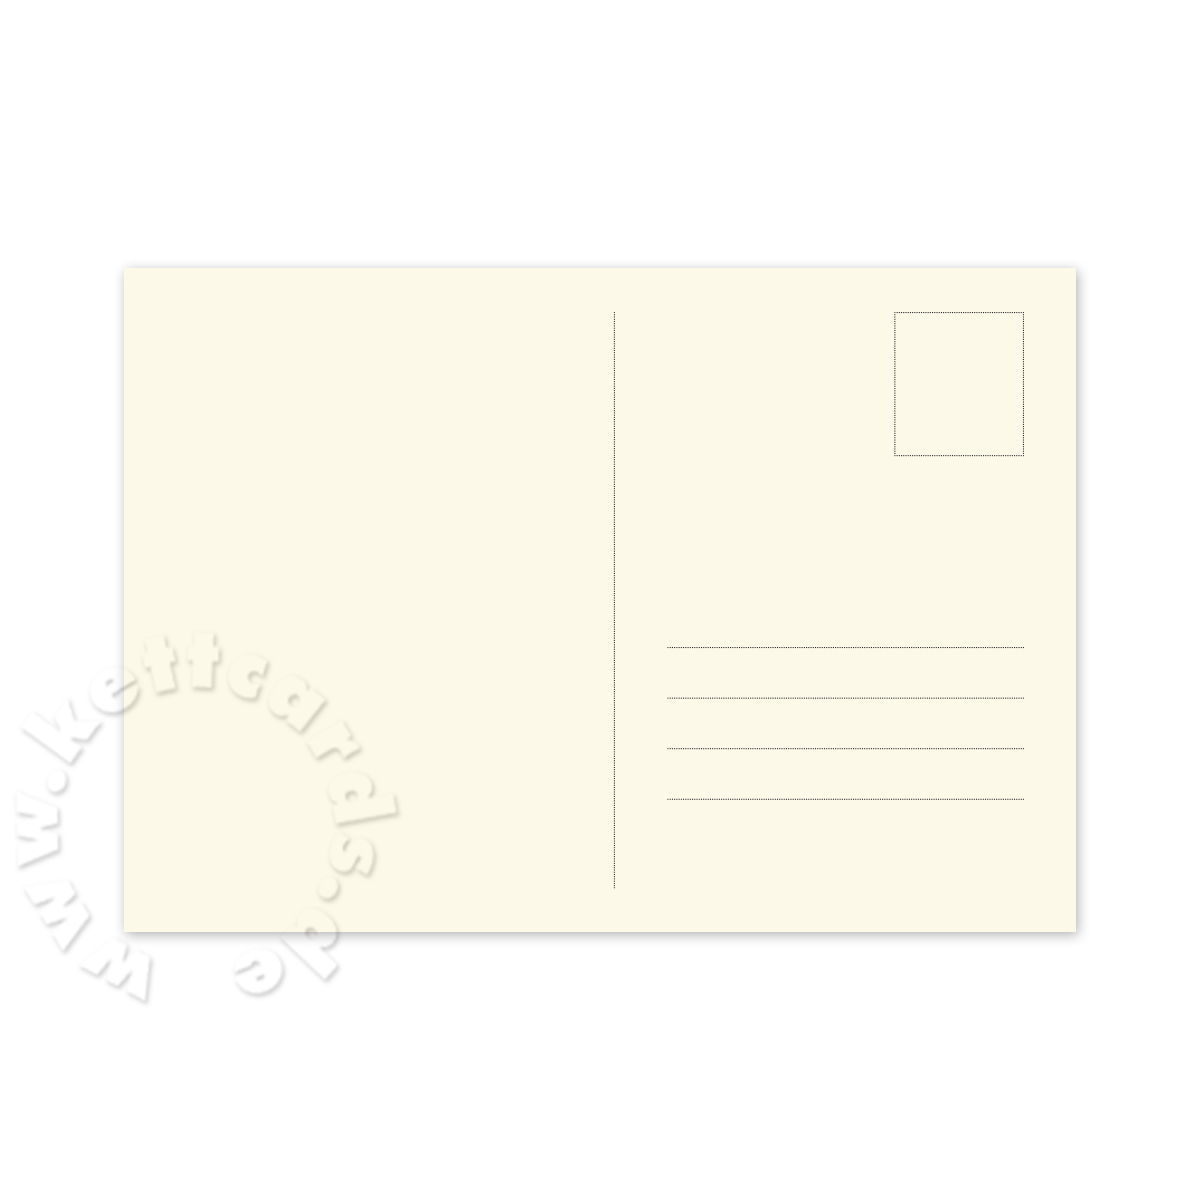 Postkarten in edlem cremeweißen Karton, mit Adressfeld, stabiles Material